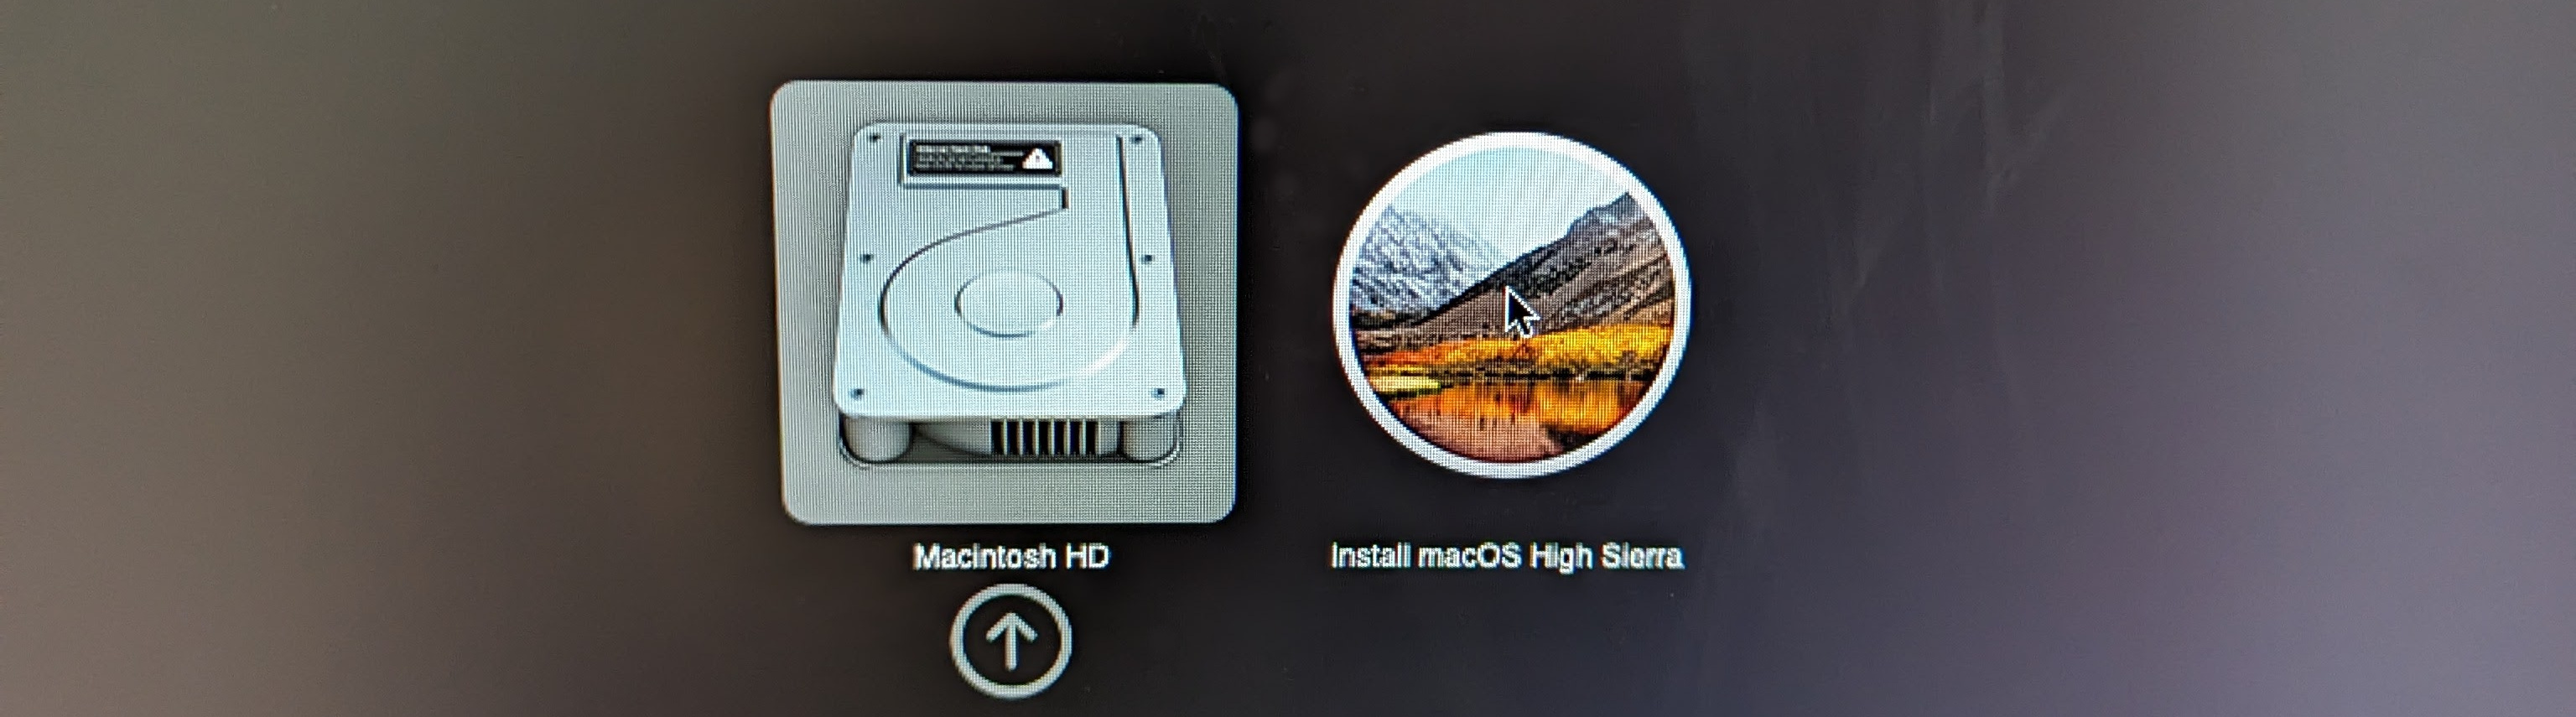 Installing macOS